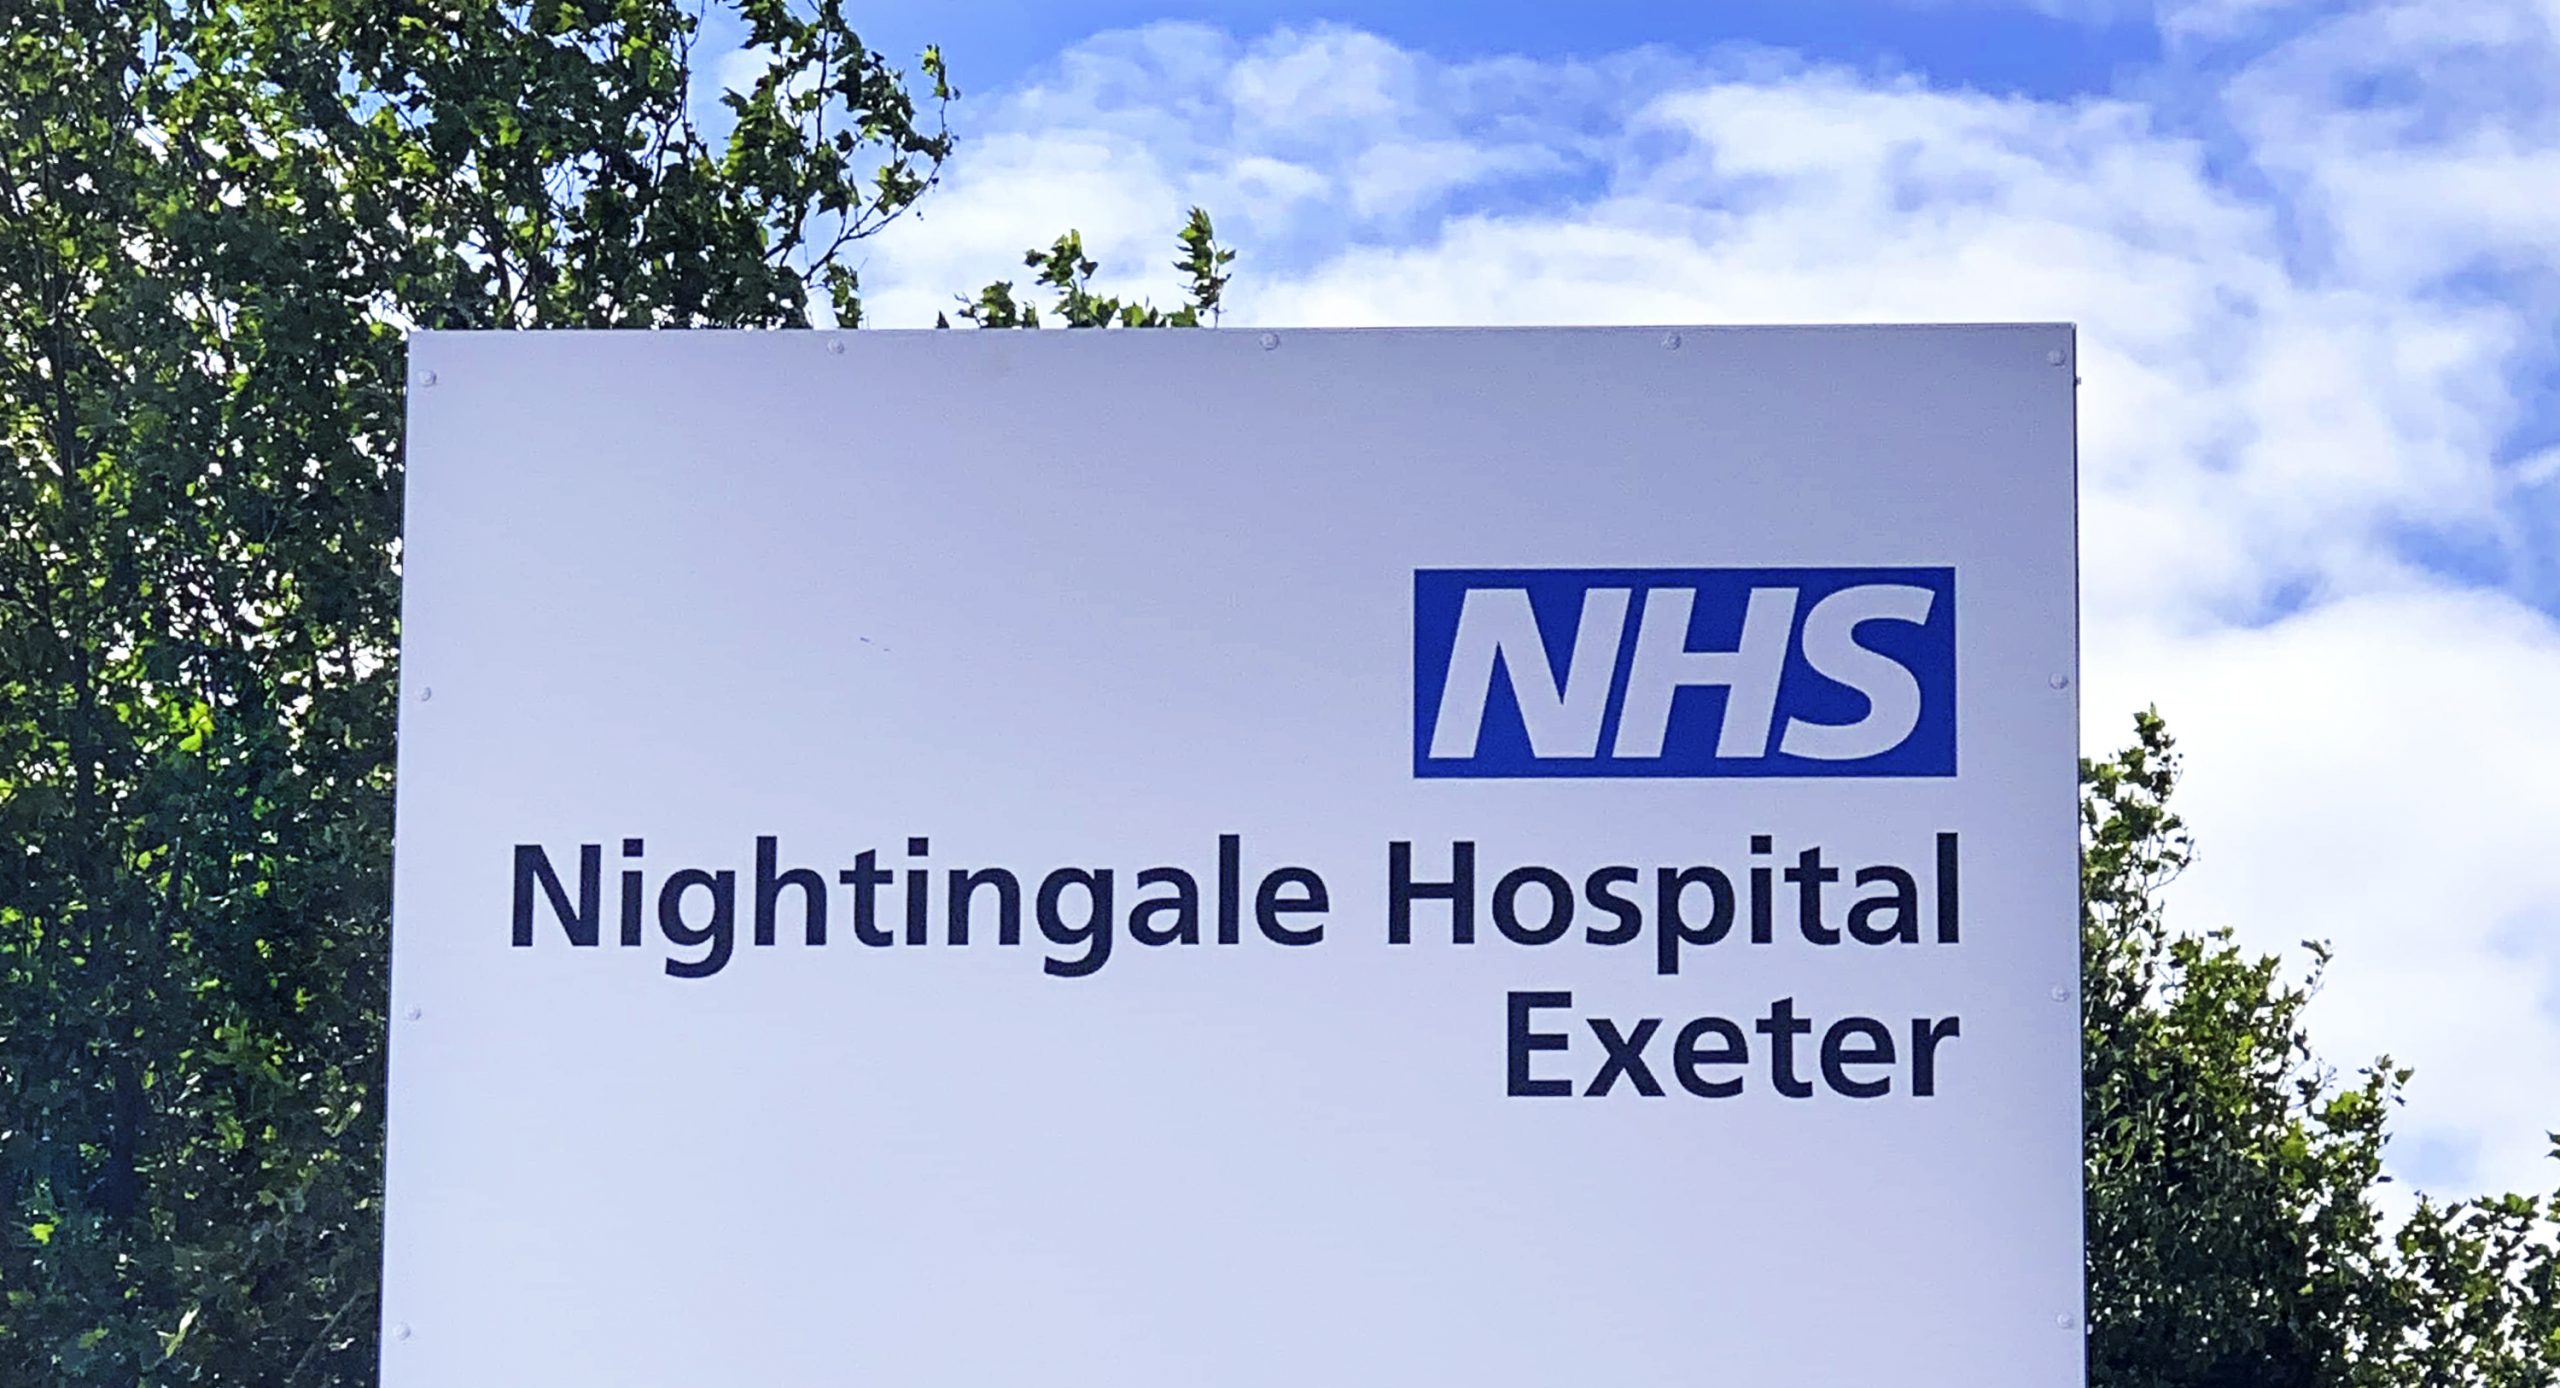 nhs nightingale hospital